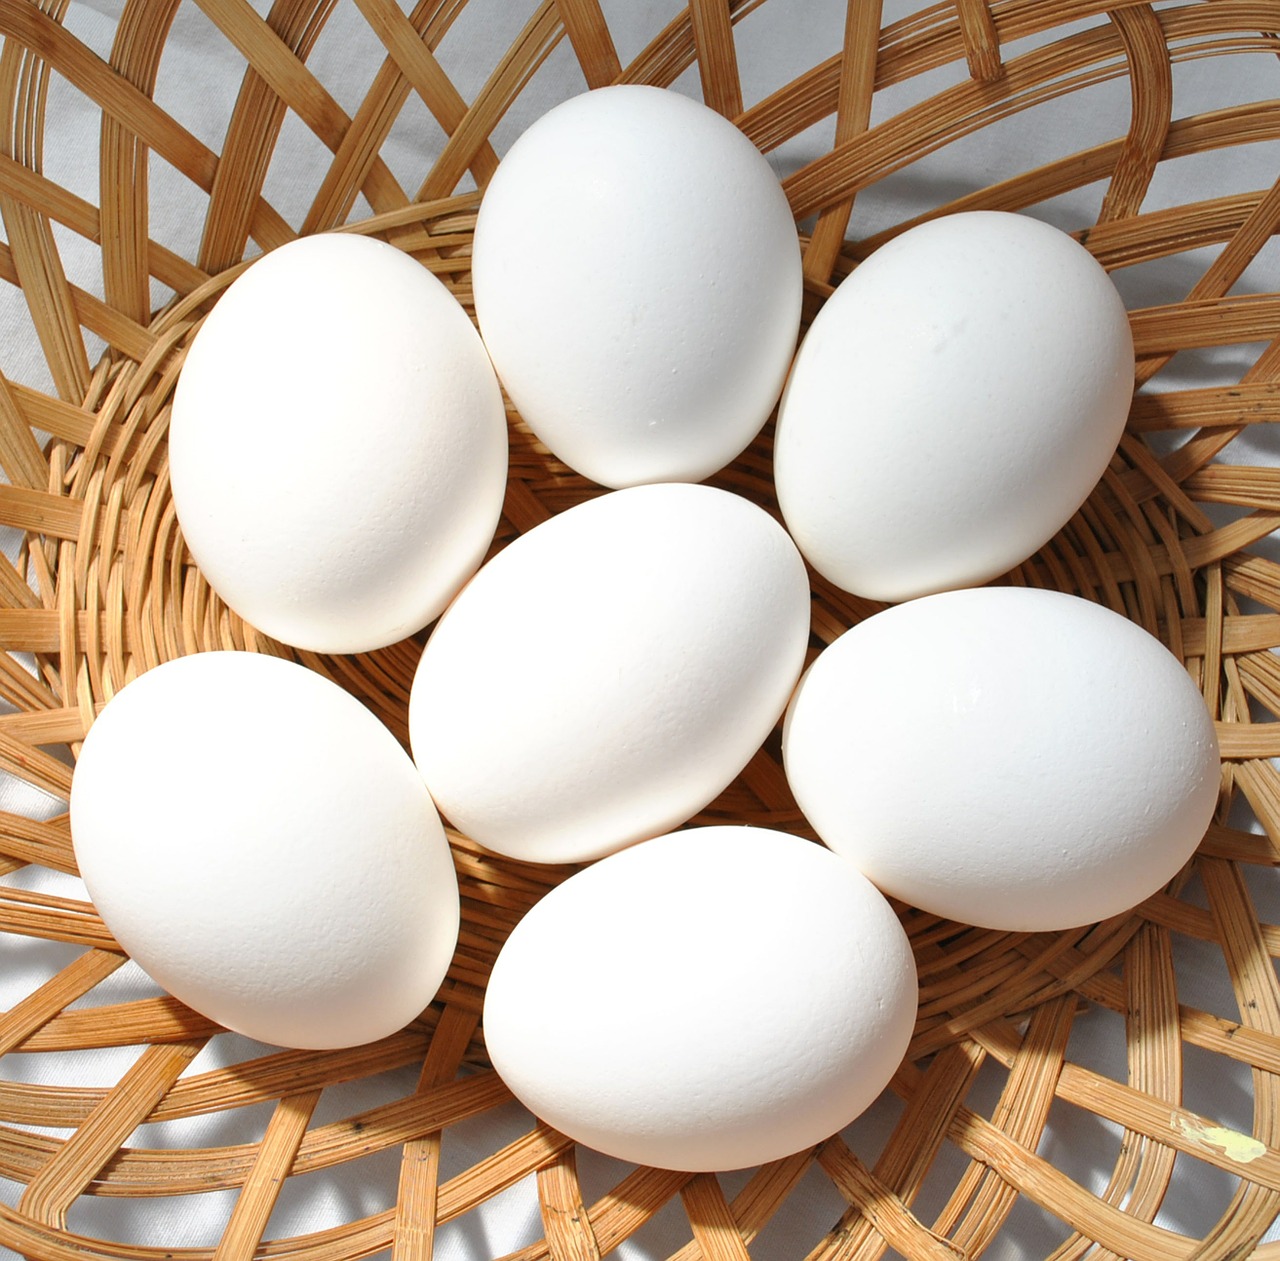 eggs white basket free photo